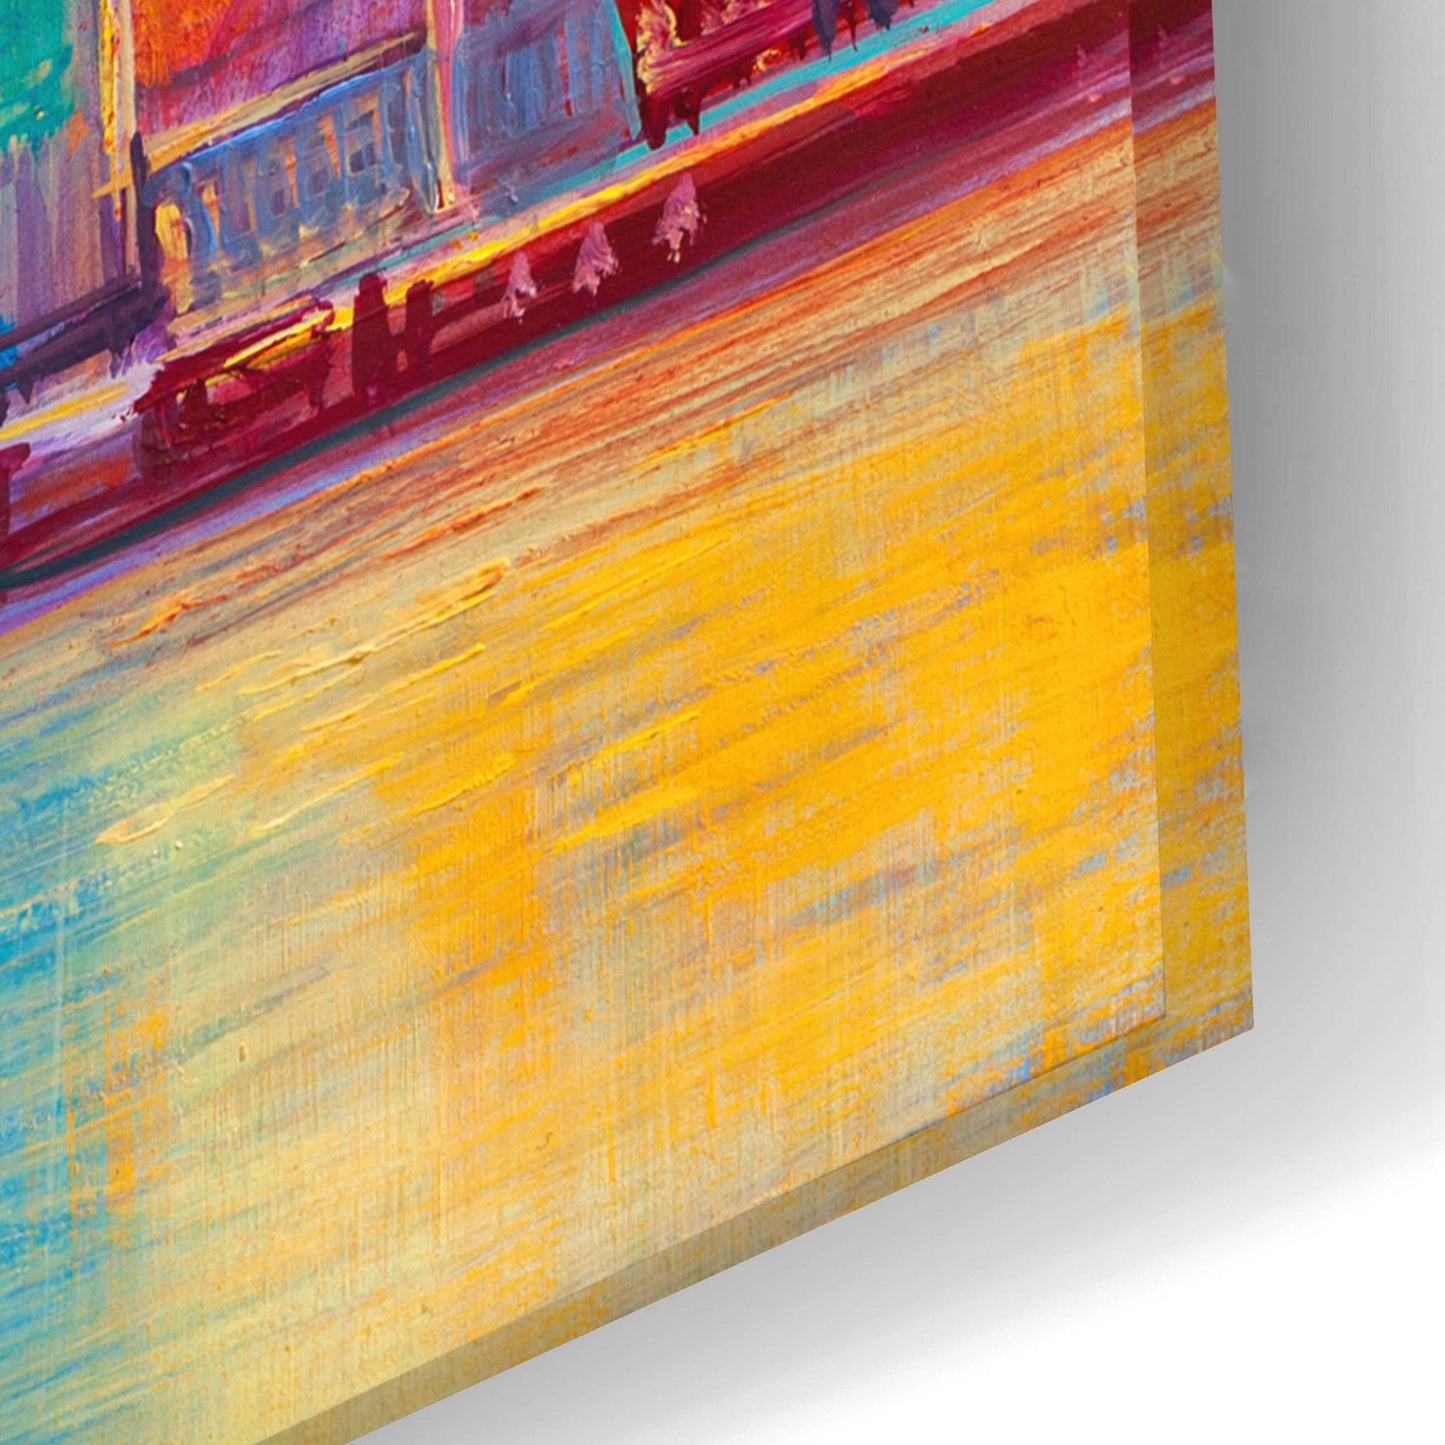 Epic Art 'Colorful Skyline' by Epic Portfolio, Acrylic Glass Wall Art,24x16